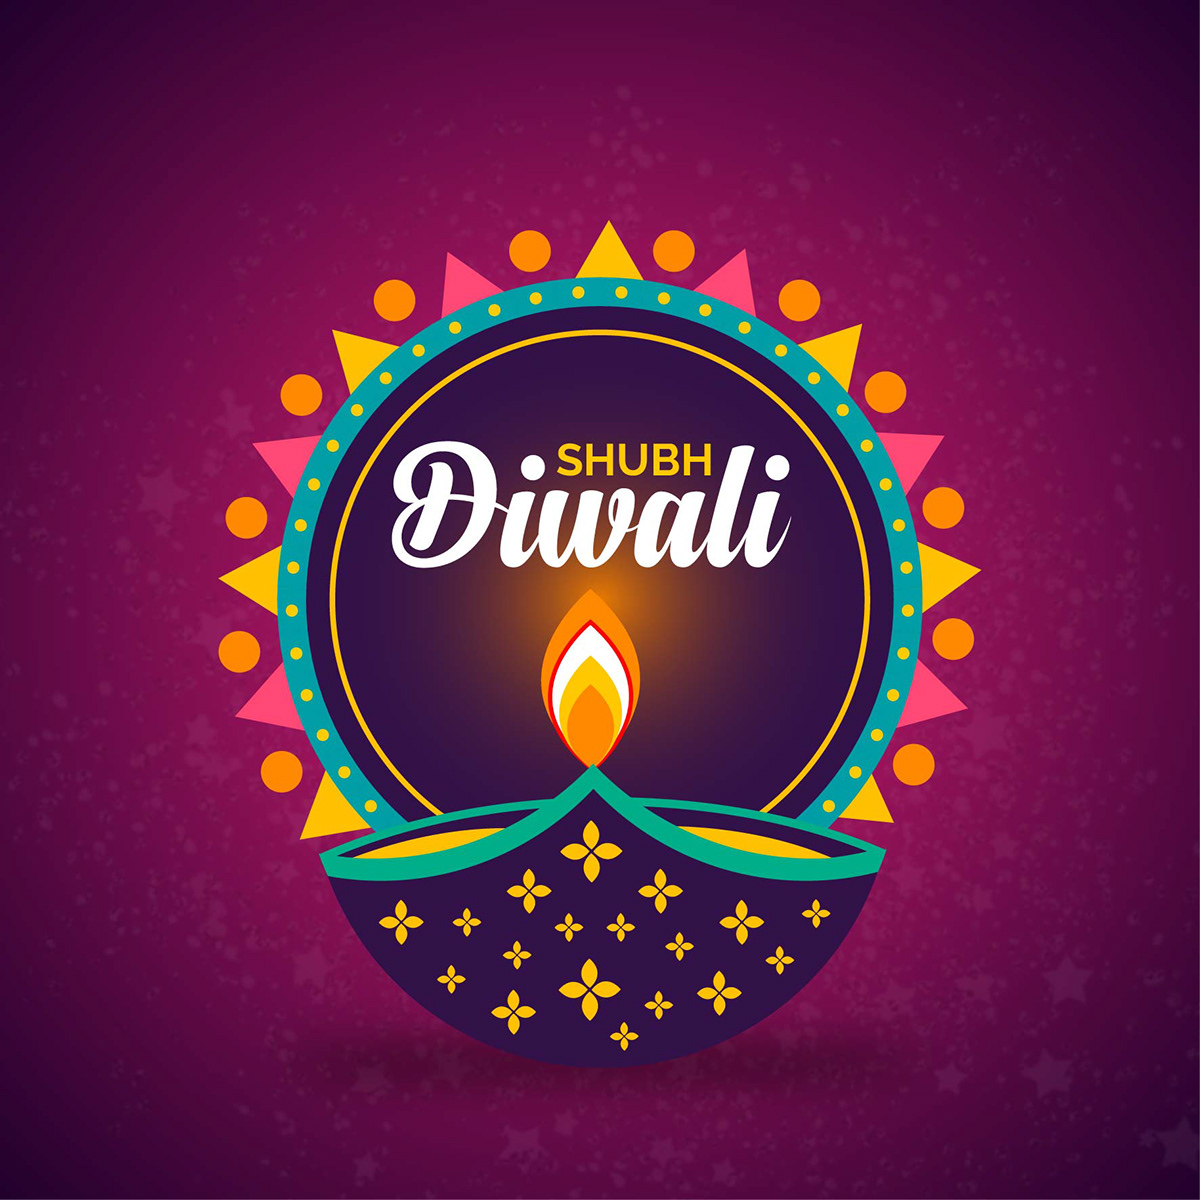 Diwali Diwali Wishes 2019 Diwali wishes Diwali Post Happy Diwali Quotes diwali graphics diwali vectors Diwali Banners diwali posters happy diwali 2019